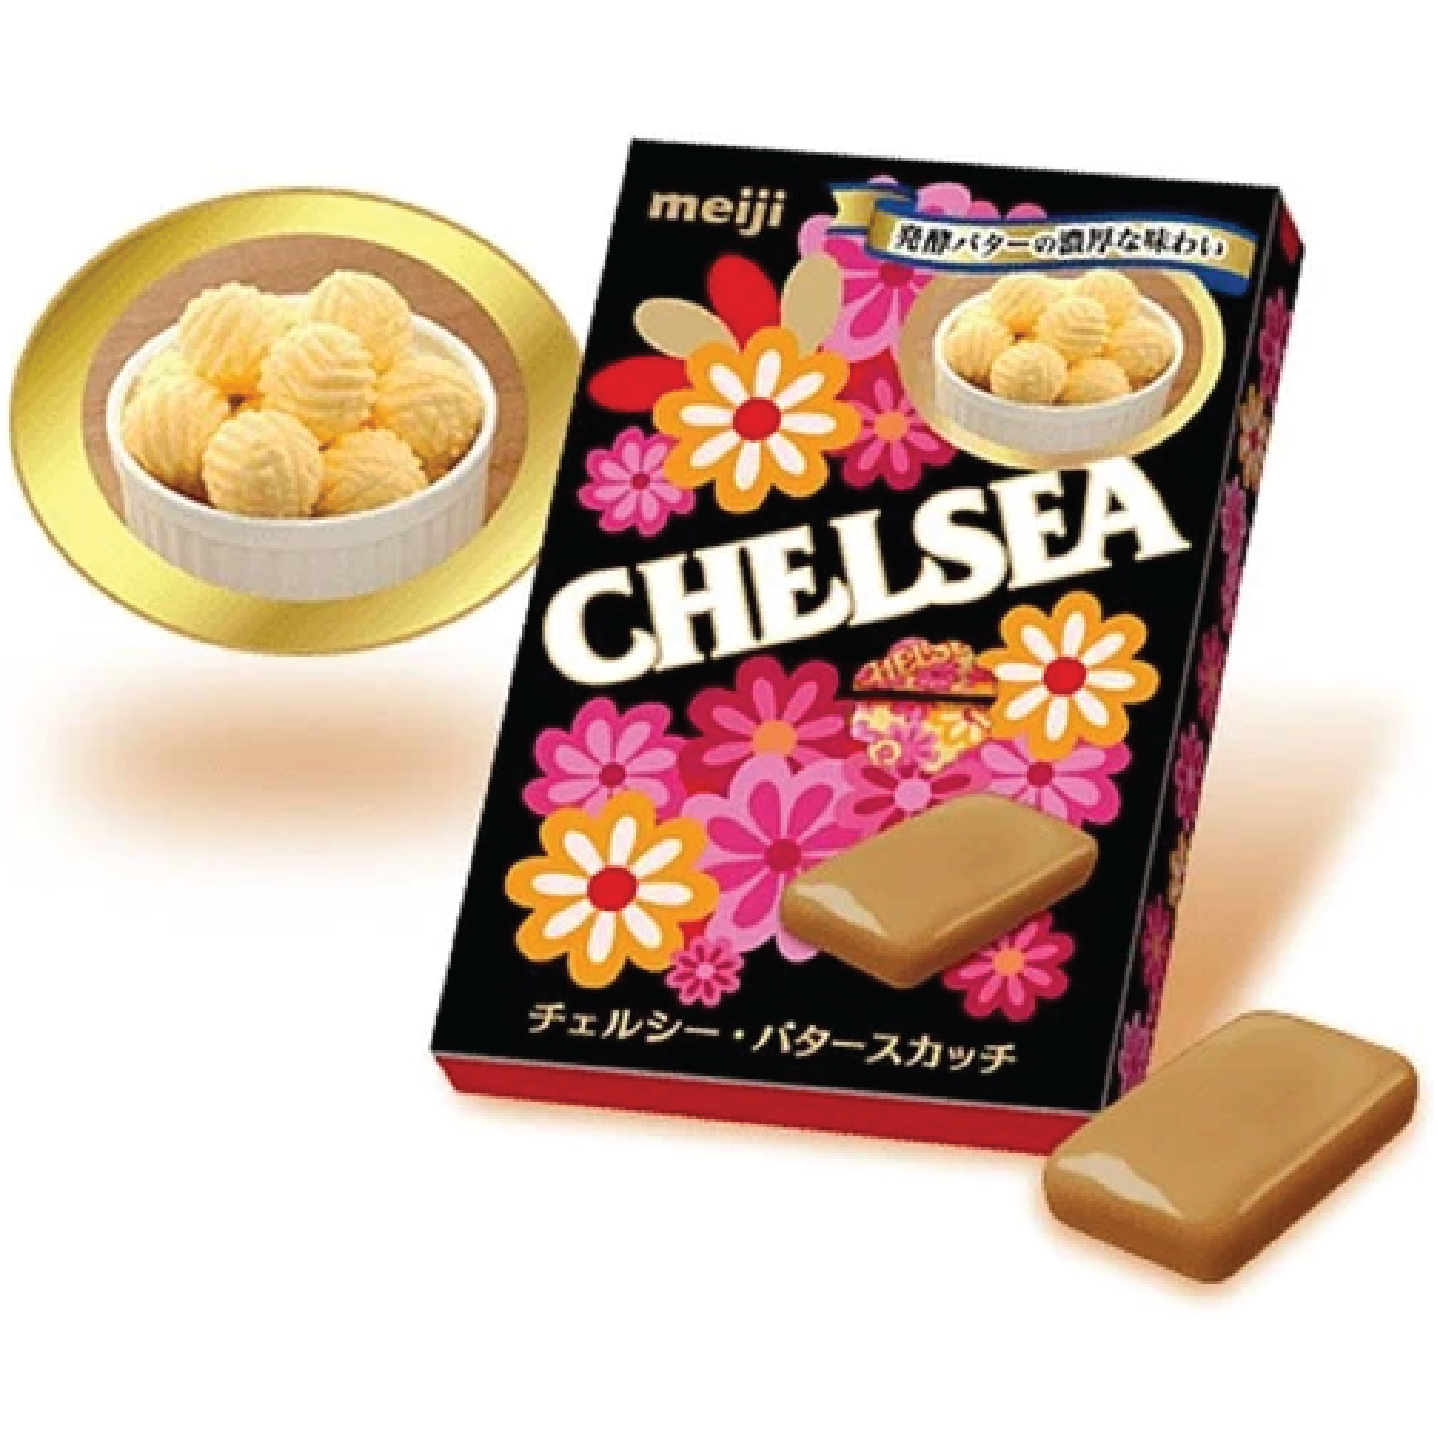 Meiji Chelsea Candy Thick Cream Flv 45G 明治 彩絲糖 濃厚奶油 45G